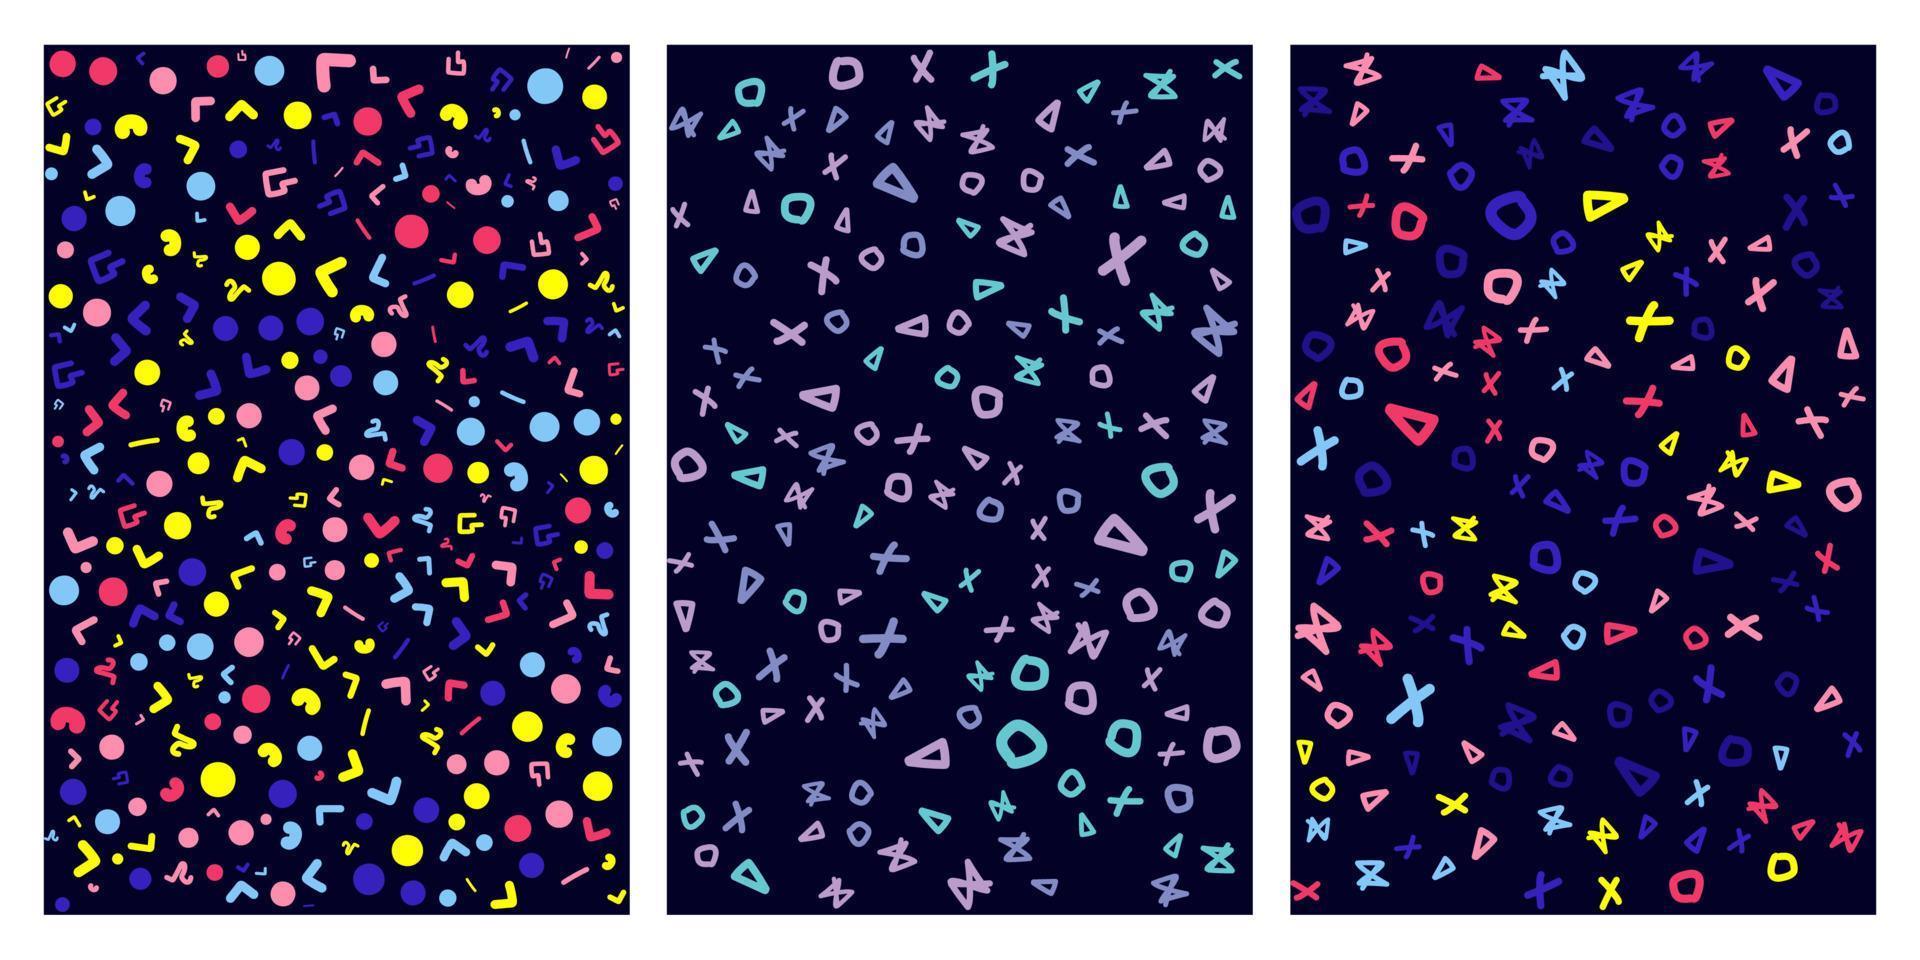 patrones, fondos geométricos abstractos con diferentes formas geométricas: triángulos, círculos, puntos, líneas. estilo Menfis. brillante y colorido, estilo de los 90. patrón de vectores sin fisuras. color neón, aleatorio